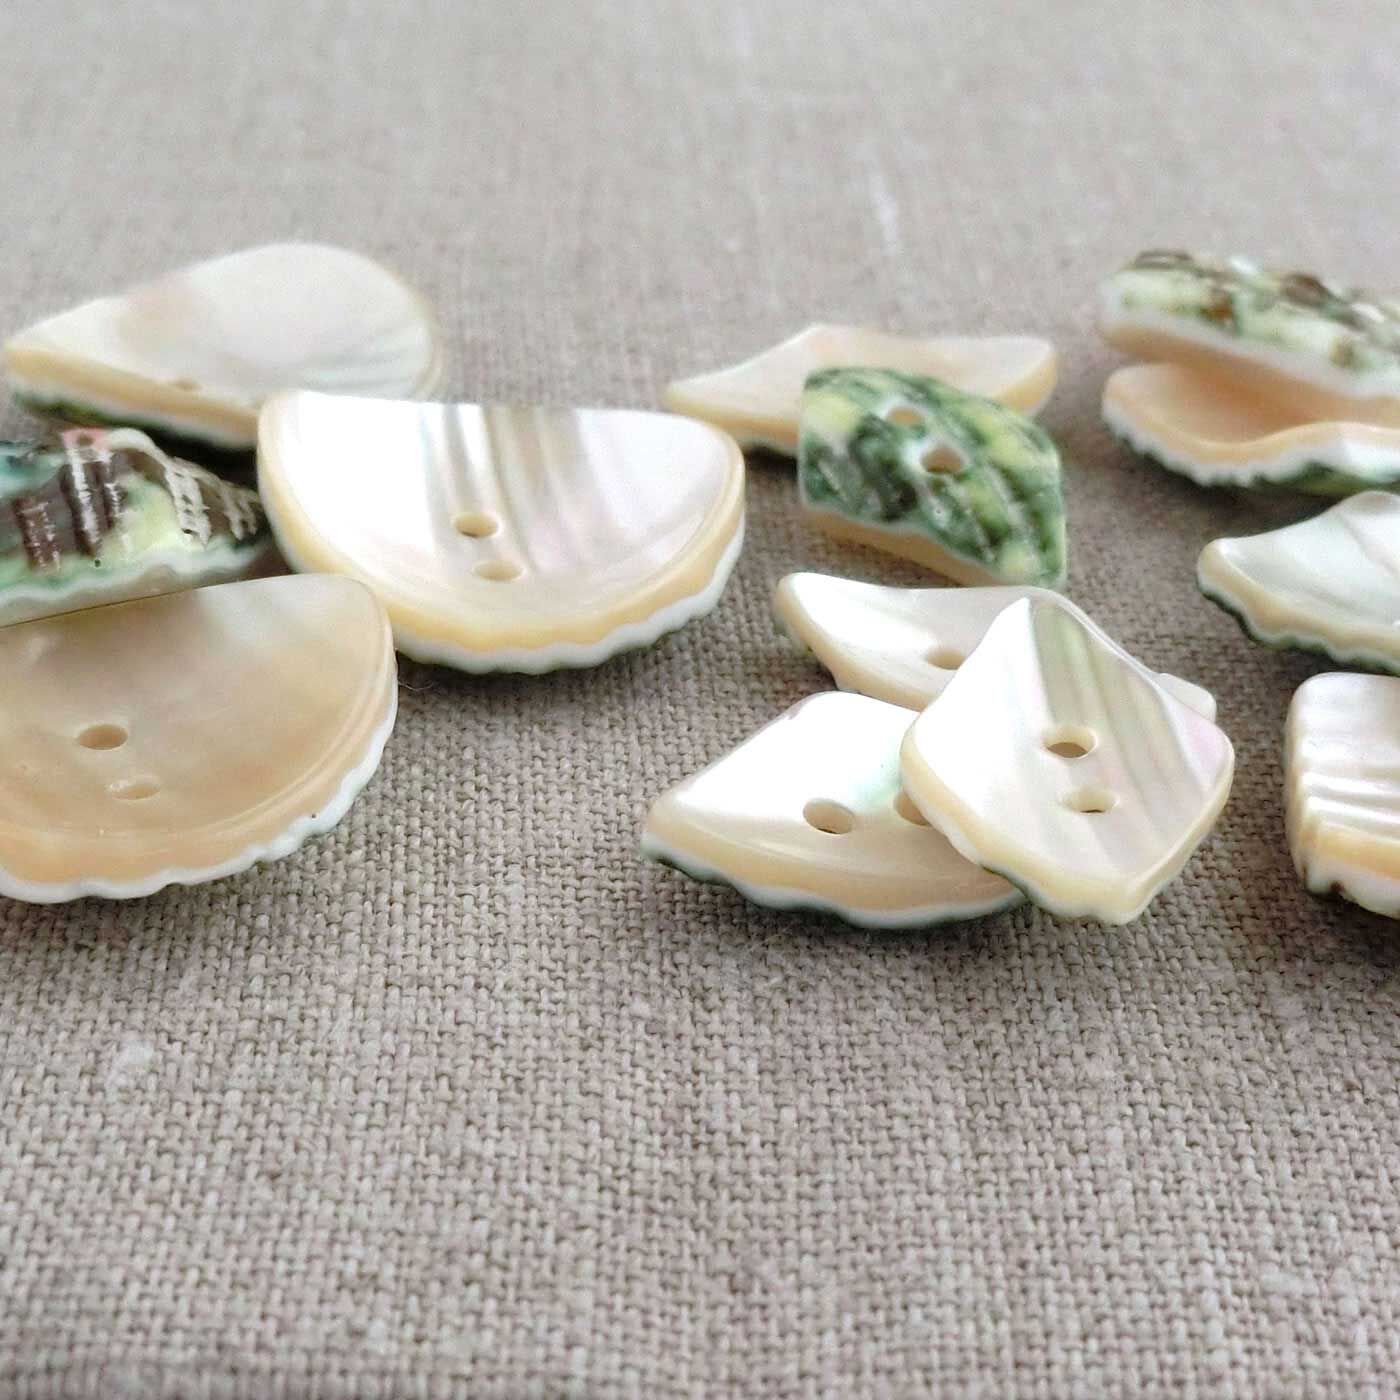 フェリシモの雑貨Kraso|4Nov 奈良の貝ボタンセット〈玉貝1500〉|不揃いなしましまの線状紋も、磨かれてツヤツヤできれい。裏もカワイイ……。